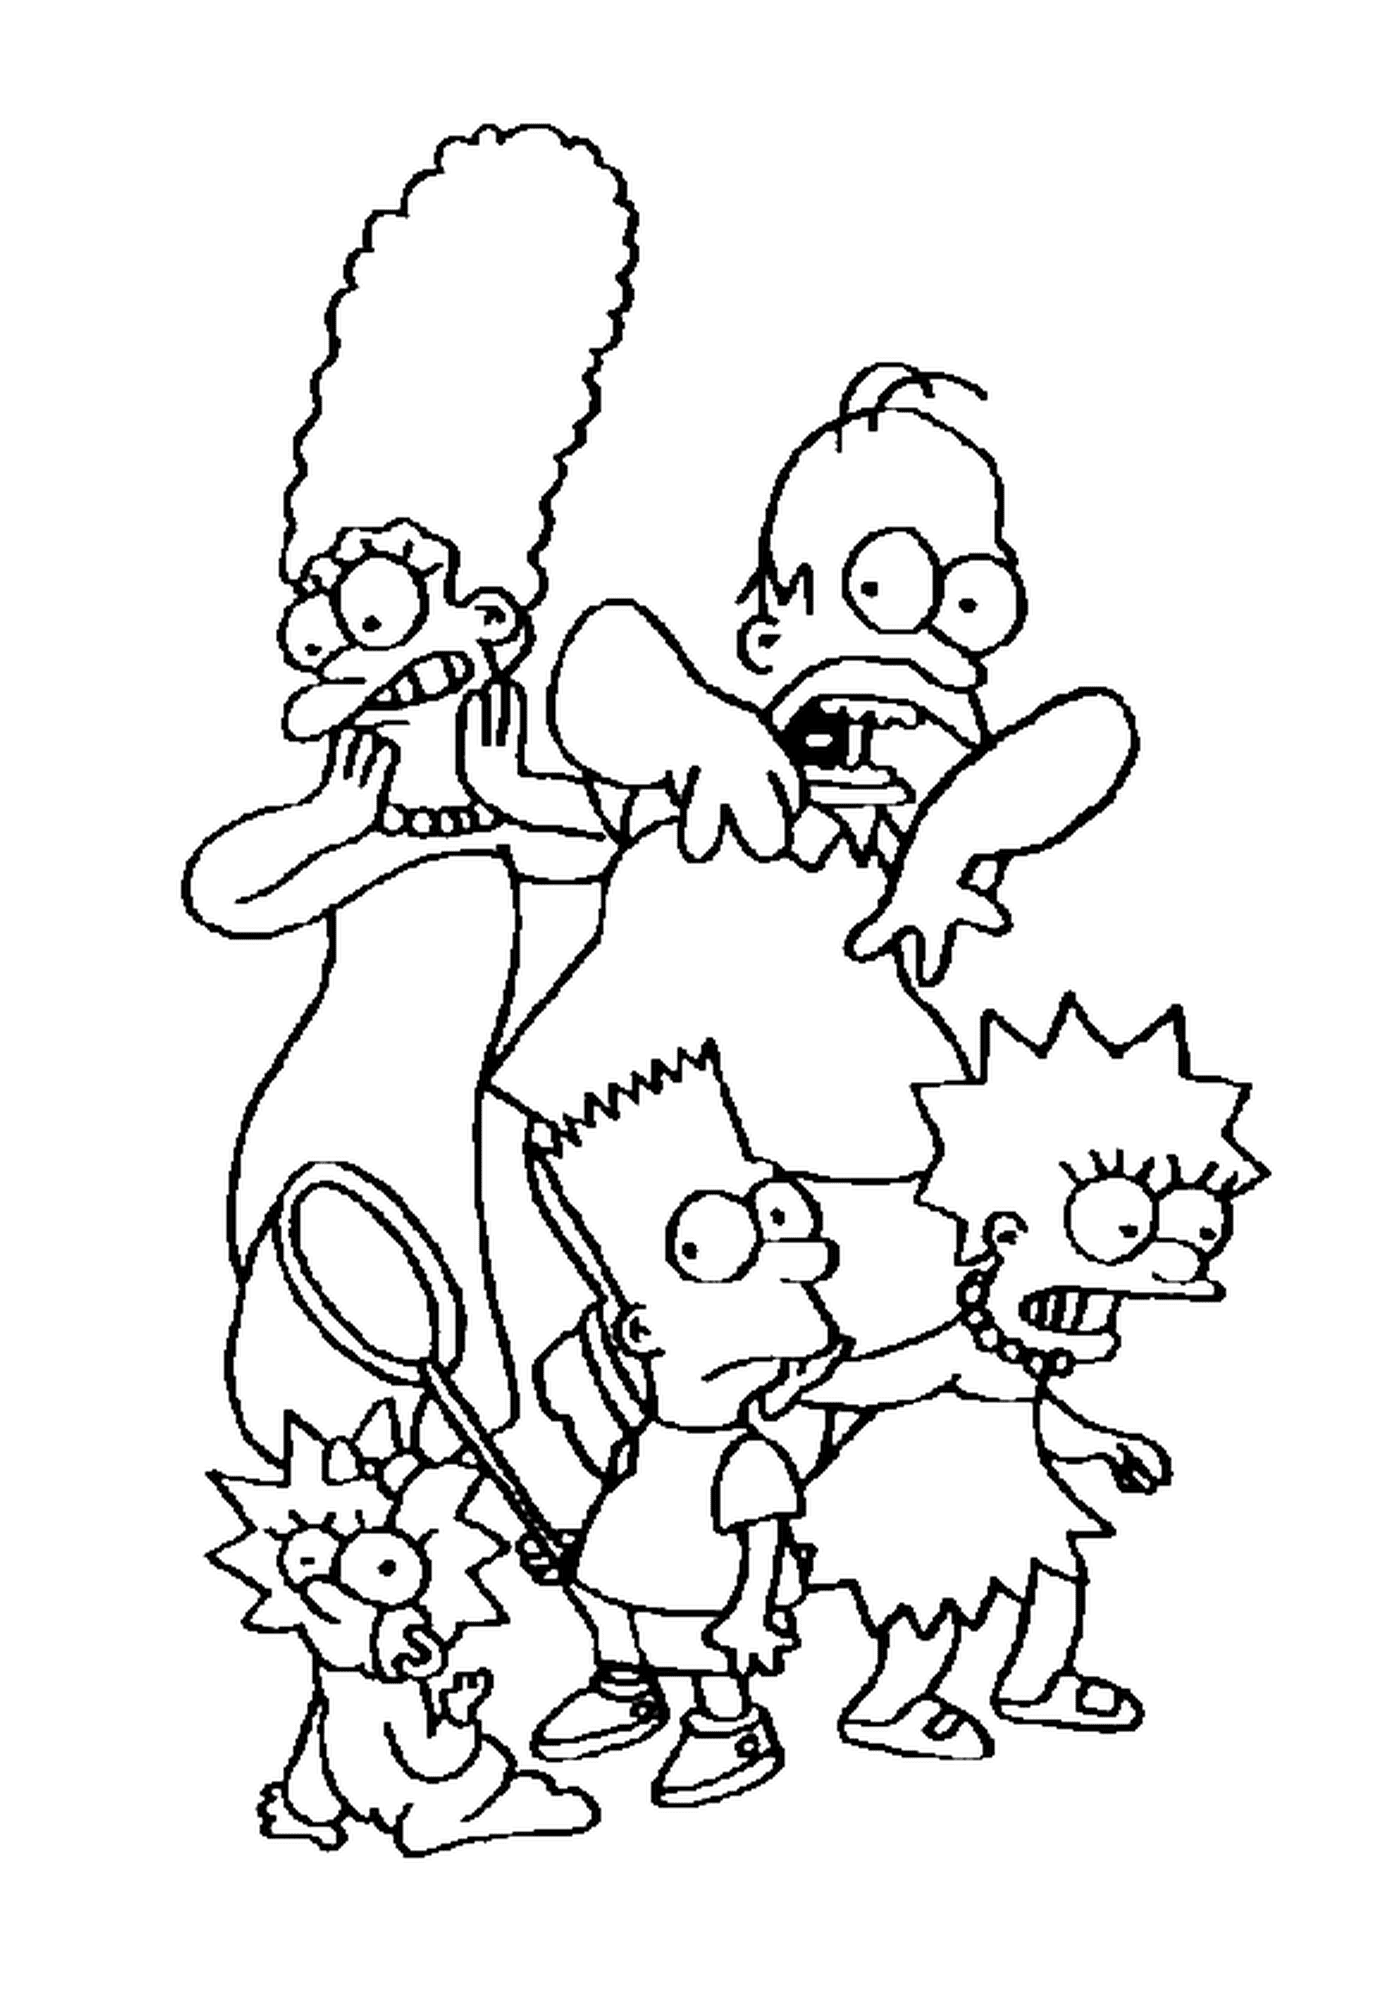  Напуганная семья Симпсон, карикатурные персонажи 